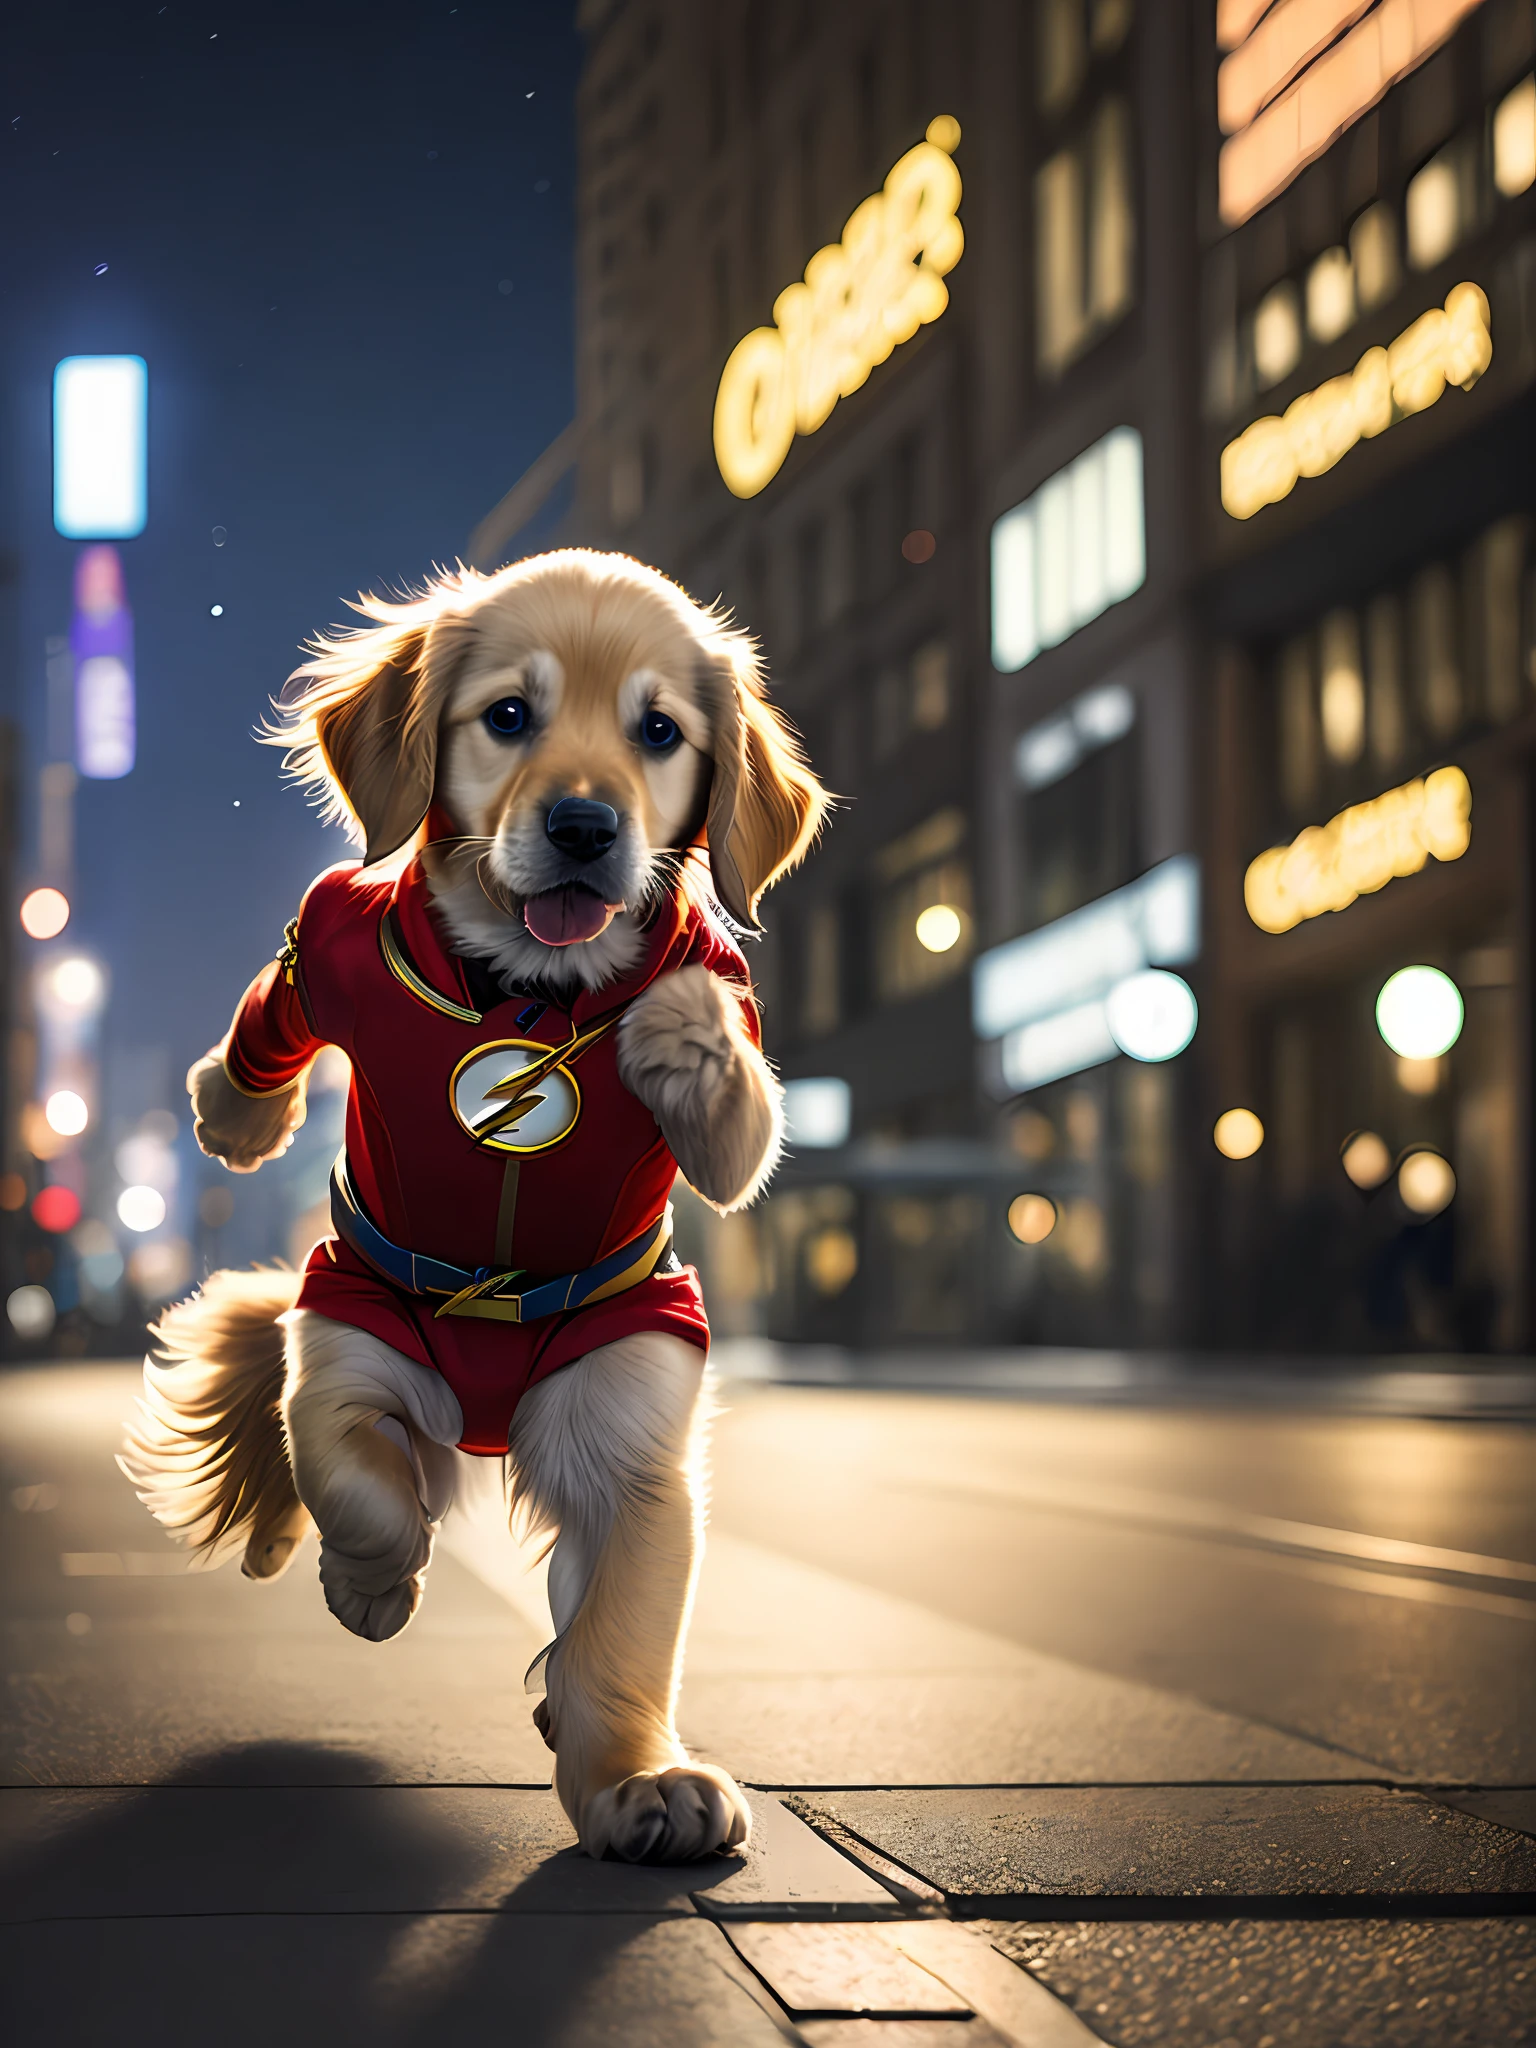 ลูกสุนัขพันธุ์โกลเด้นรีทรีฟเวอร์ x ลูกแมวชุดแฟลชสีแดง, วิ่ง, น่ารัก, มีความสุข, (โรงภาพยนตร์:1.2), พื้นหลังเมืองกลางคืน